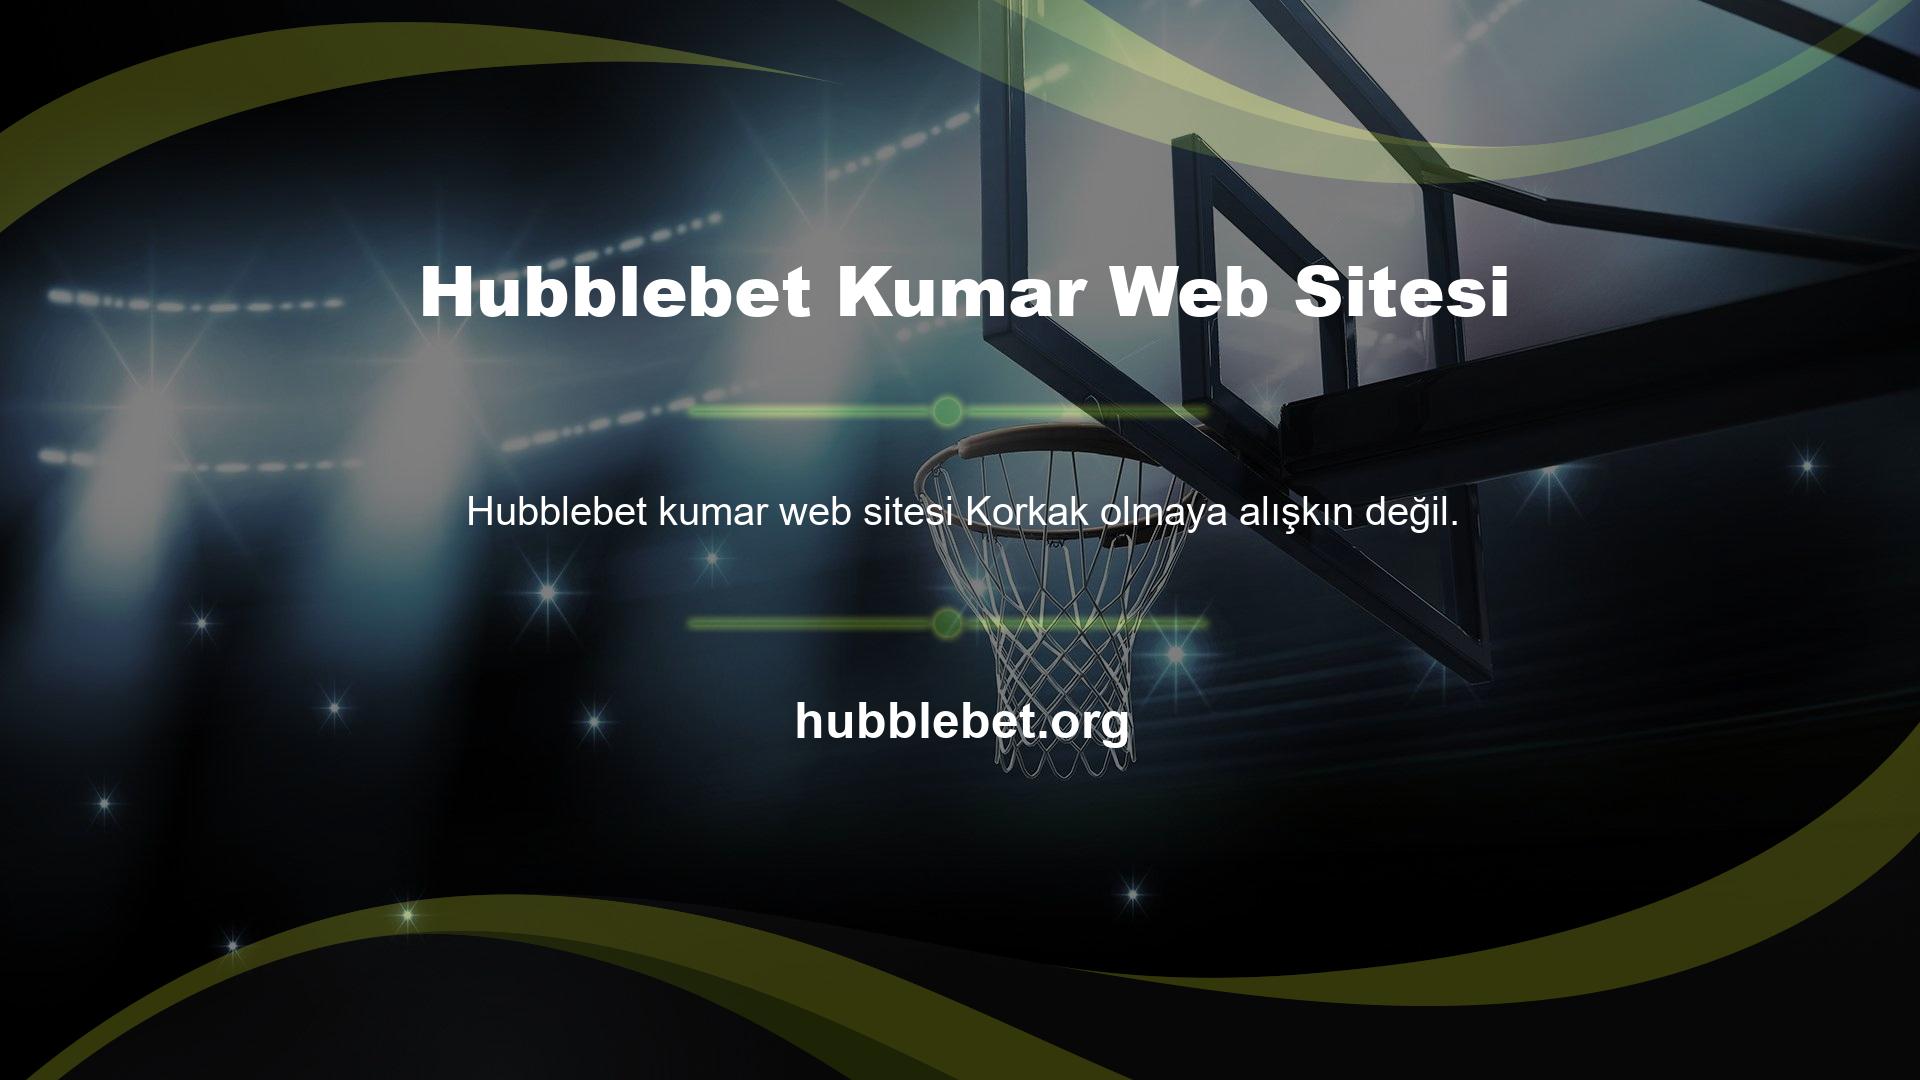 Hubblebet Bahis Sitesi Tasarım Türü Canlı bahis alanında özellikle promosyonlar konusunda fark yaratmak için tasarlanmıştır